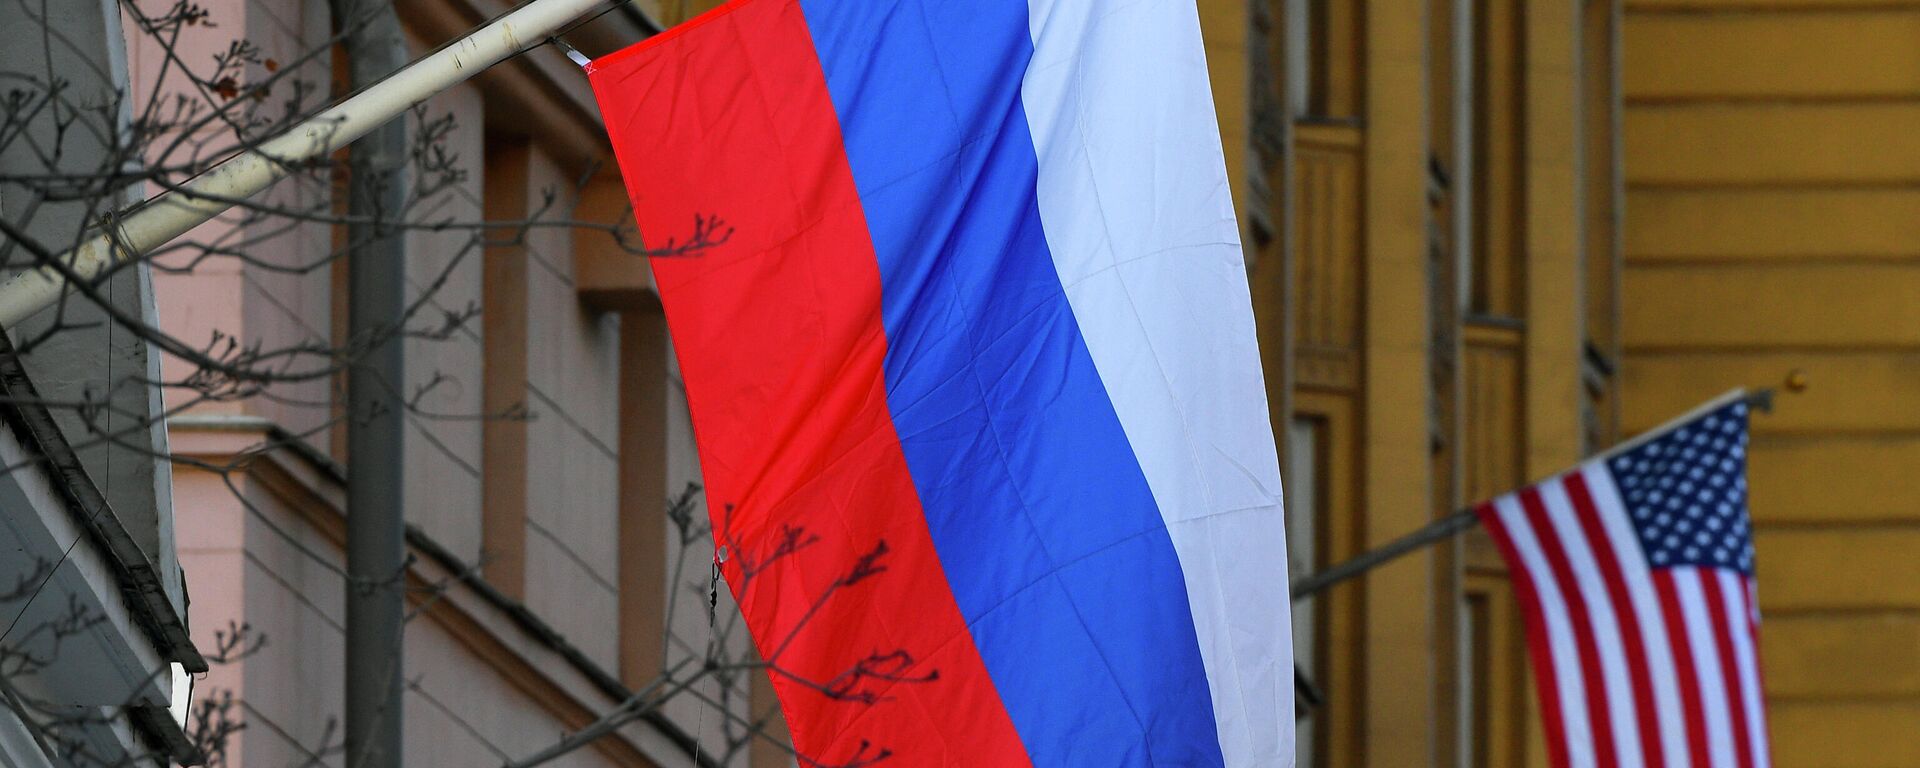 Banderas de Rusia y EEUU en la Embajada estadounidense en Moscú - Sputnik Mundo, 1920, 14.05.2021